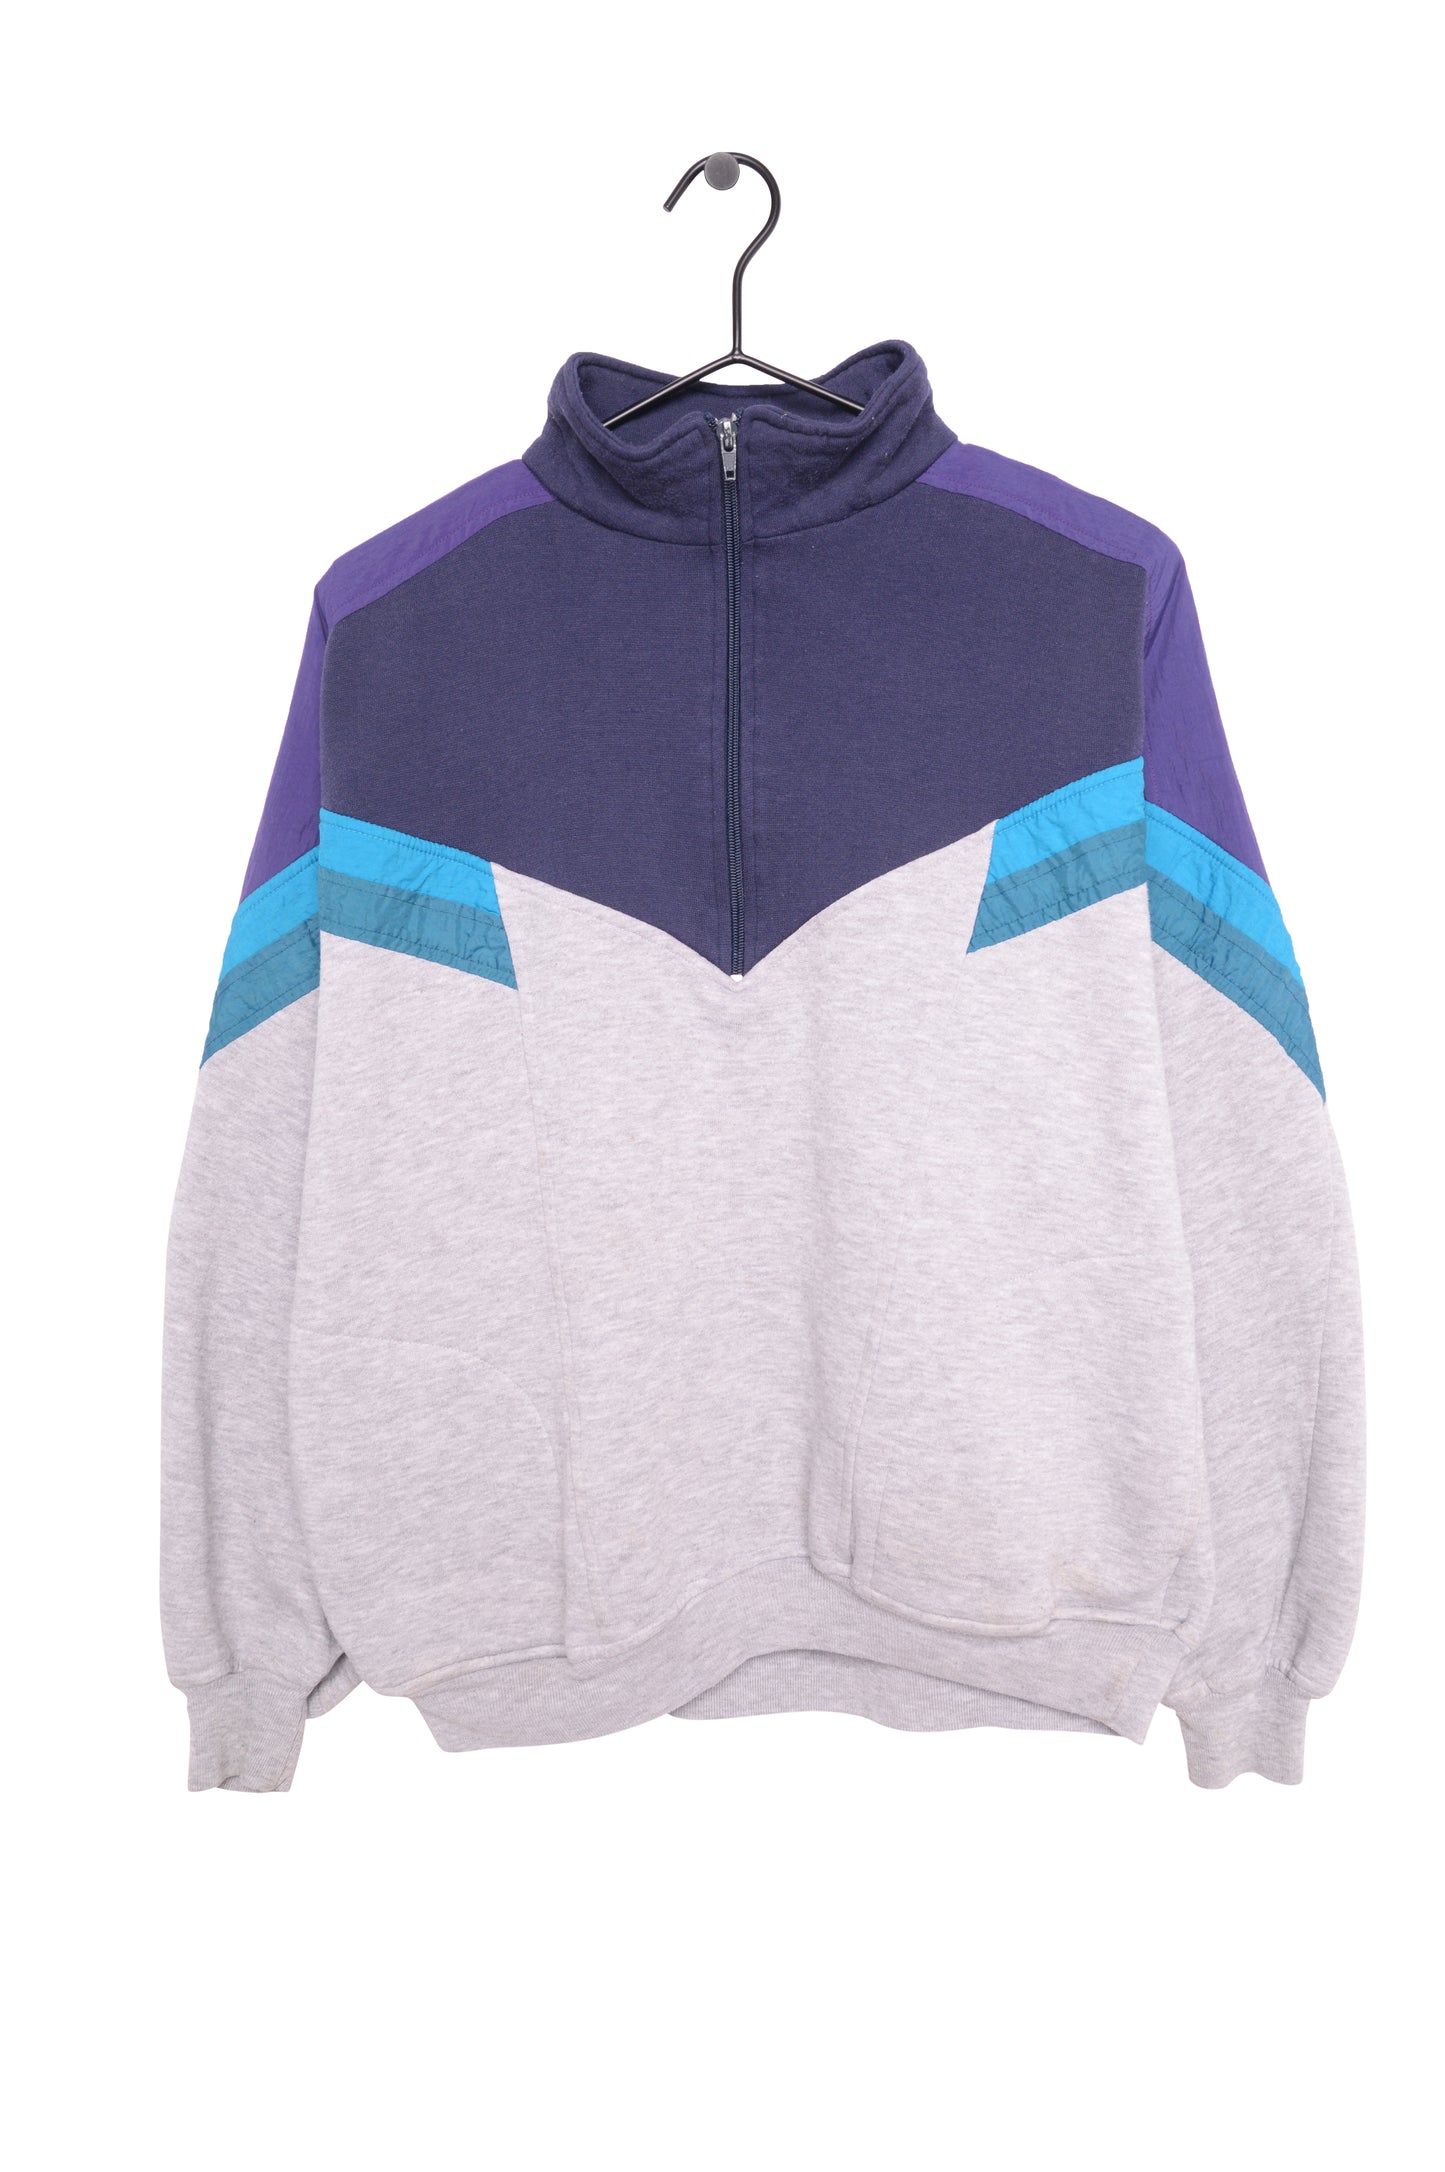 1980s Half-Zip Colorblock Sweatshirt